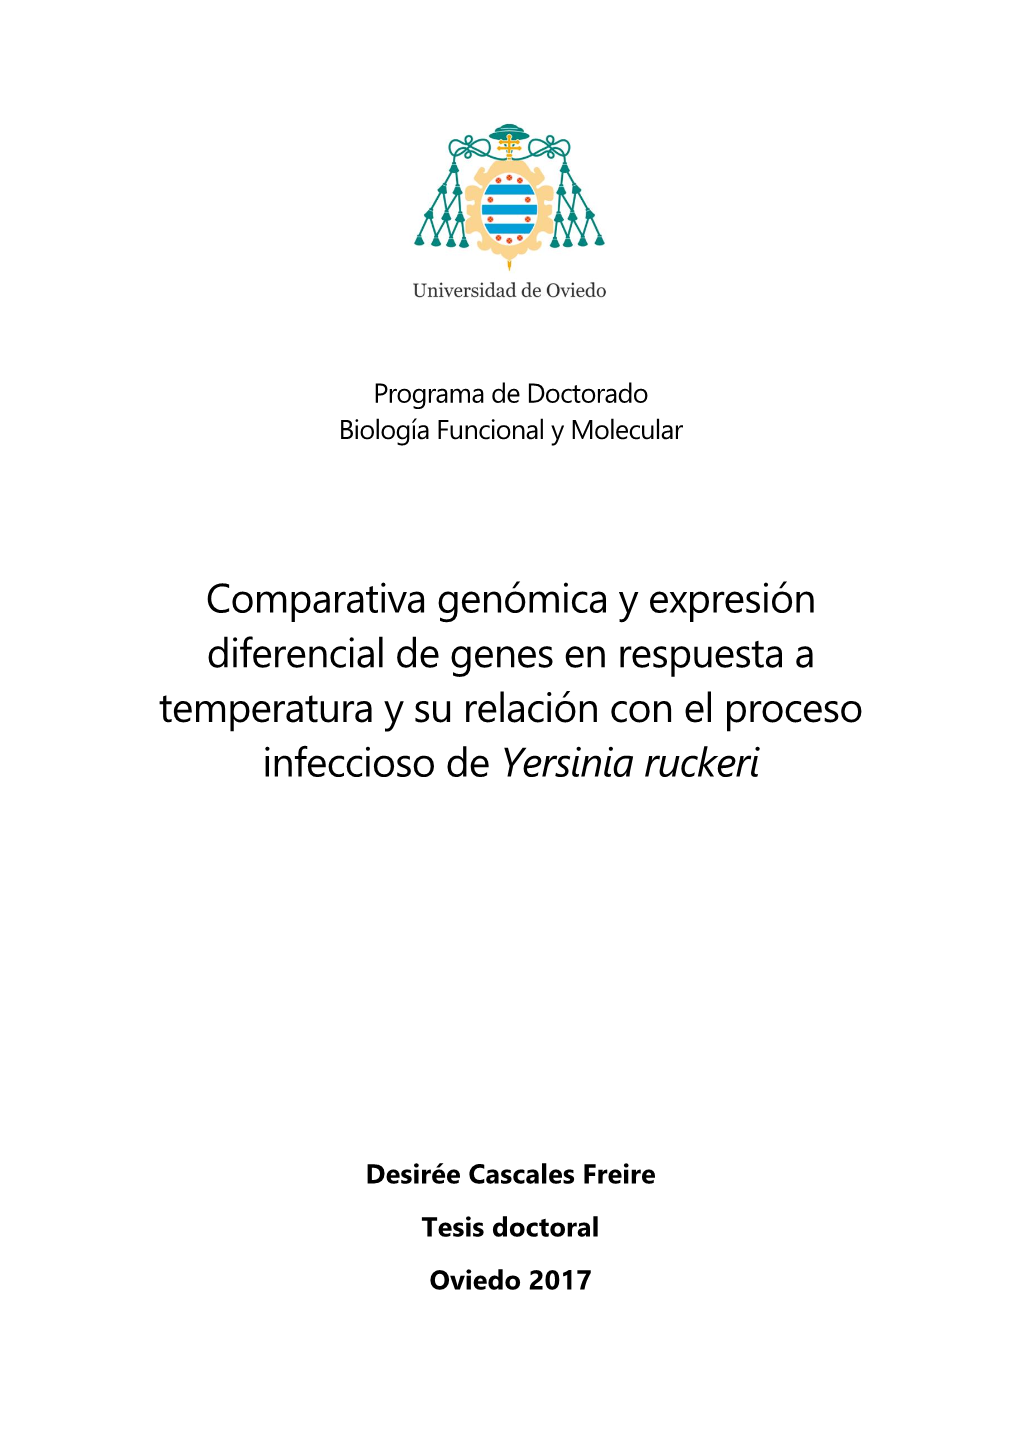 Comparativa Genómica Y Expresión Diferencial De Genes En Respuesta a Temperatura Y Su Relación Con El Proceso Infeccioso De Yersinia Ruckeri